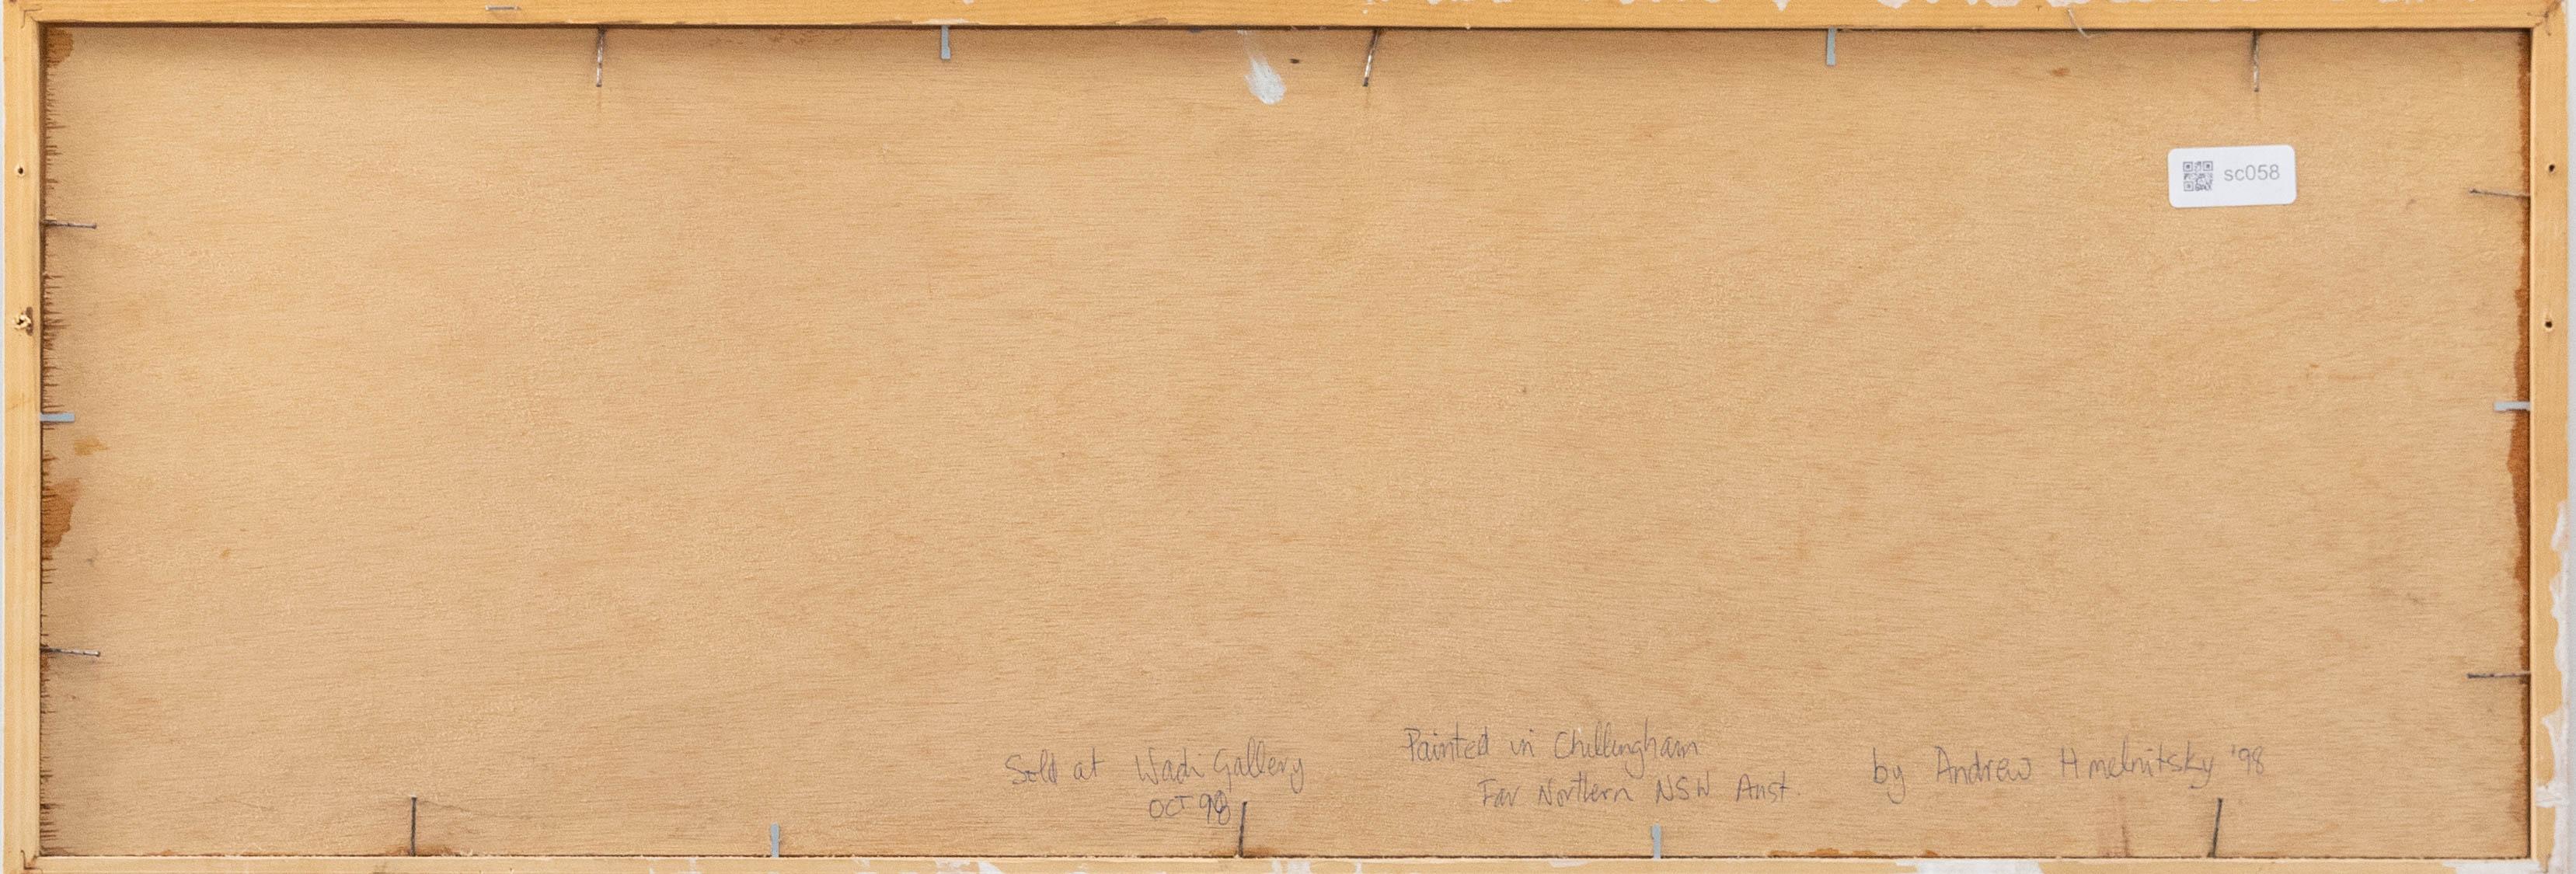 Une étude expressionniste naïve représentant le paysage de forêt dense de Chillingham en Nouvelle-Galles du Sud. Présentée dans un simple cadre en bois avec une inscription postérieure au verso. Non signée. A bord.